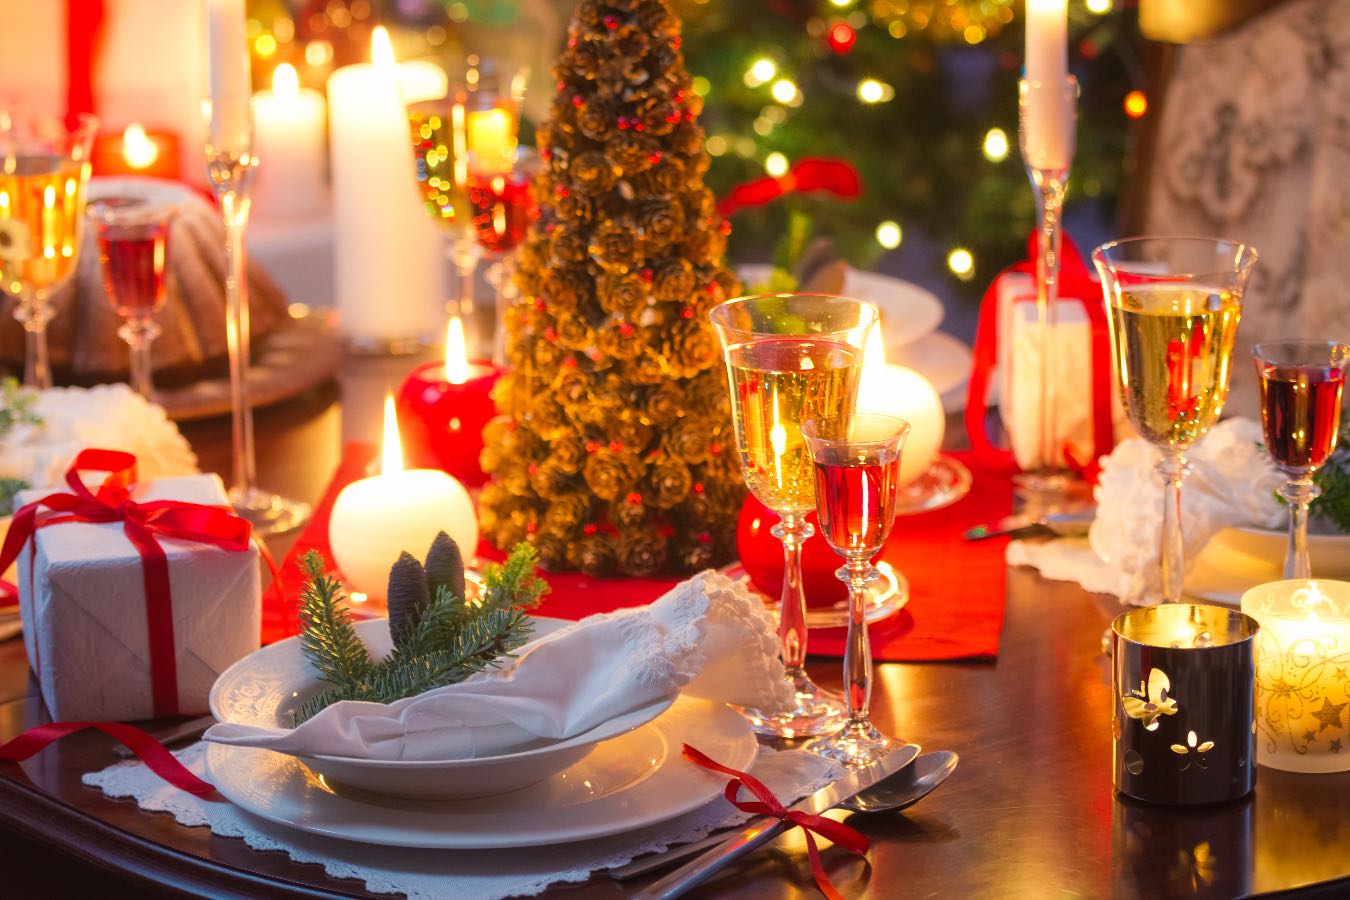 Tradycyjne potrawy wigilijne w Niemczech. Co jedzą w Święta nasi sąsiedzi?